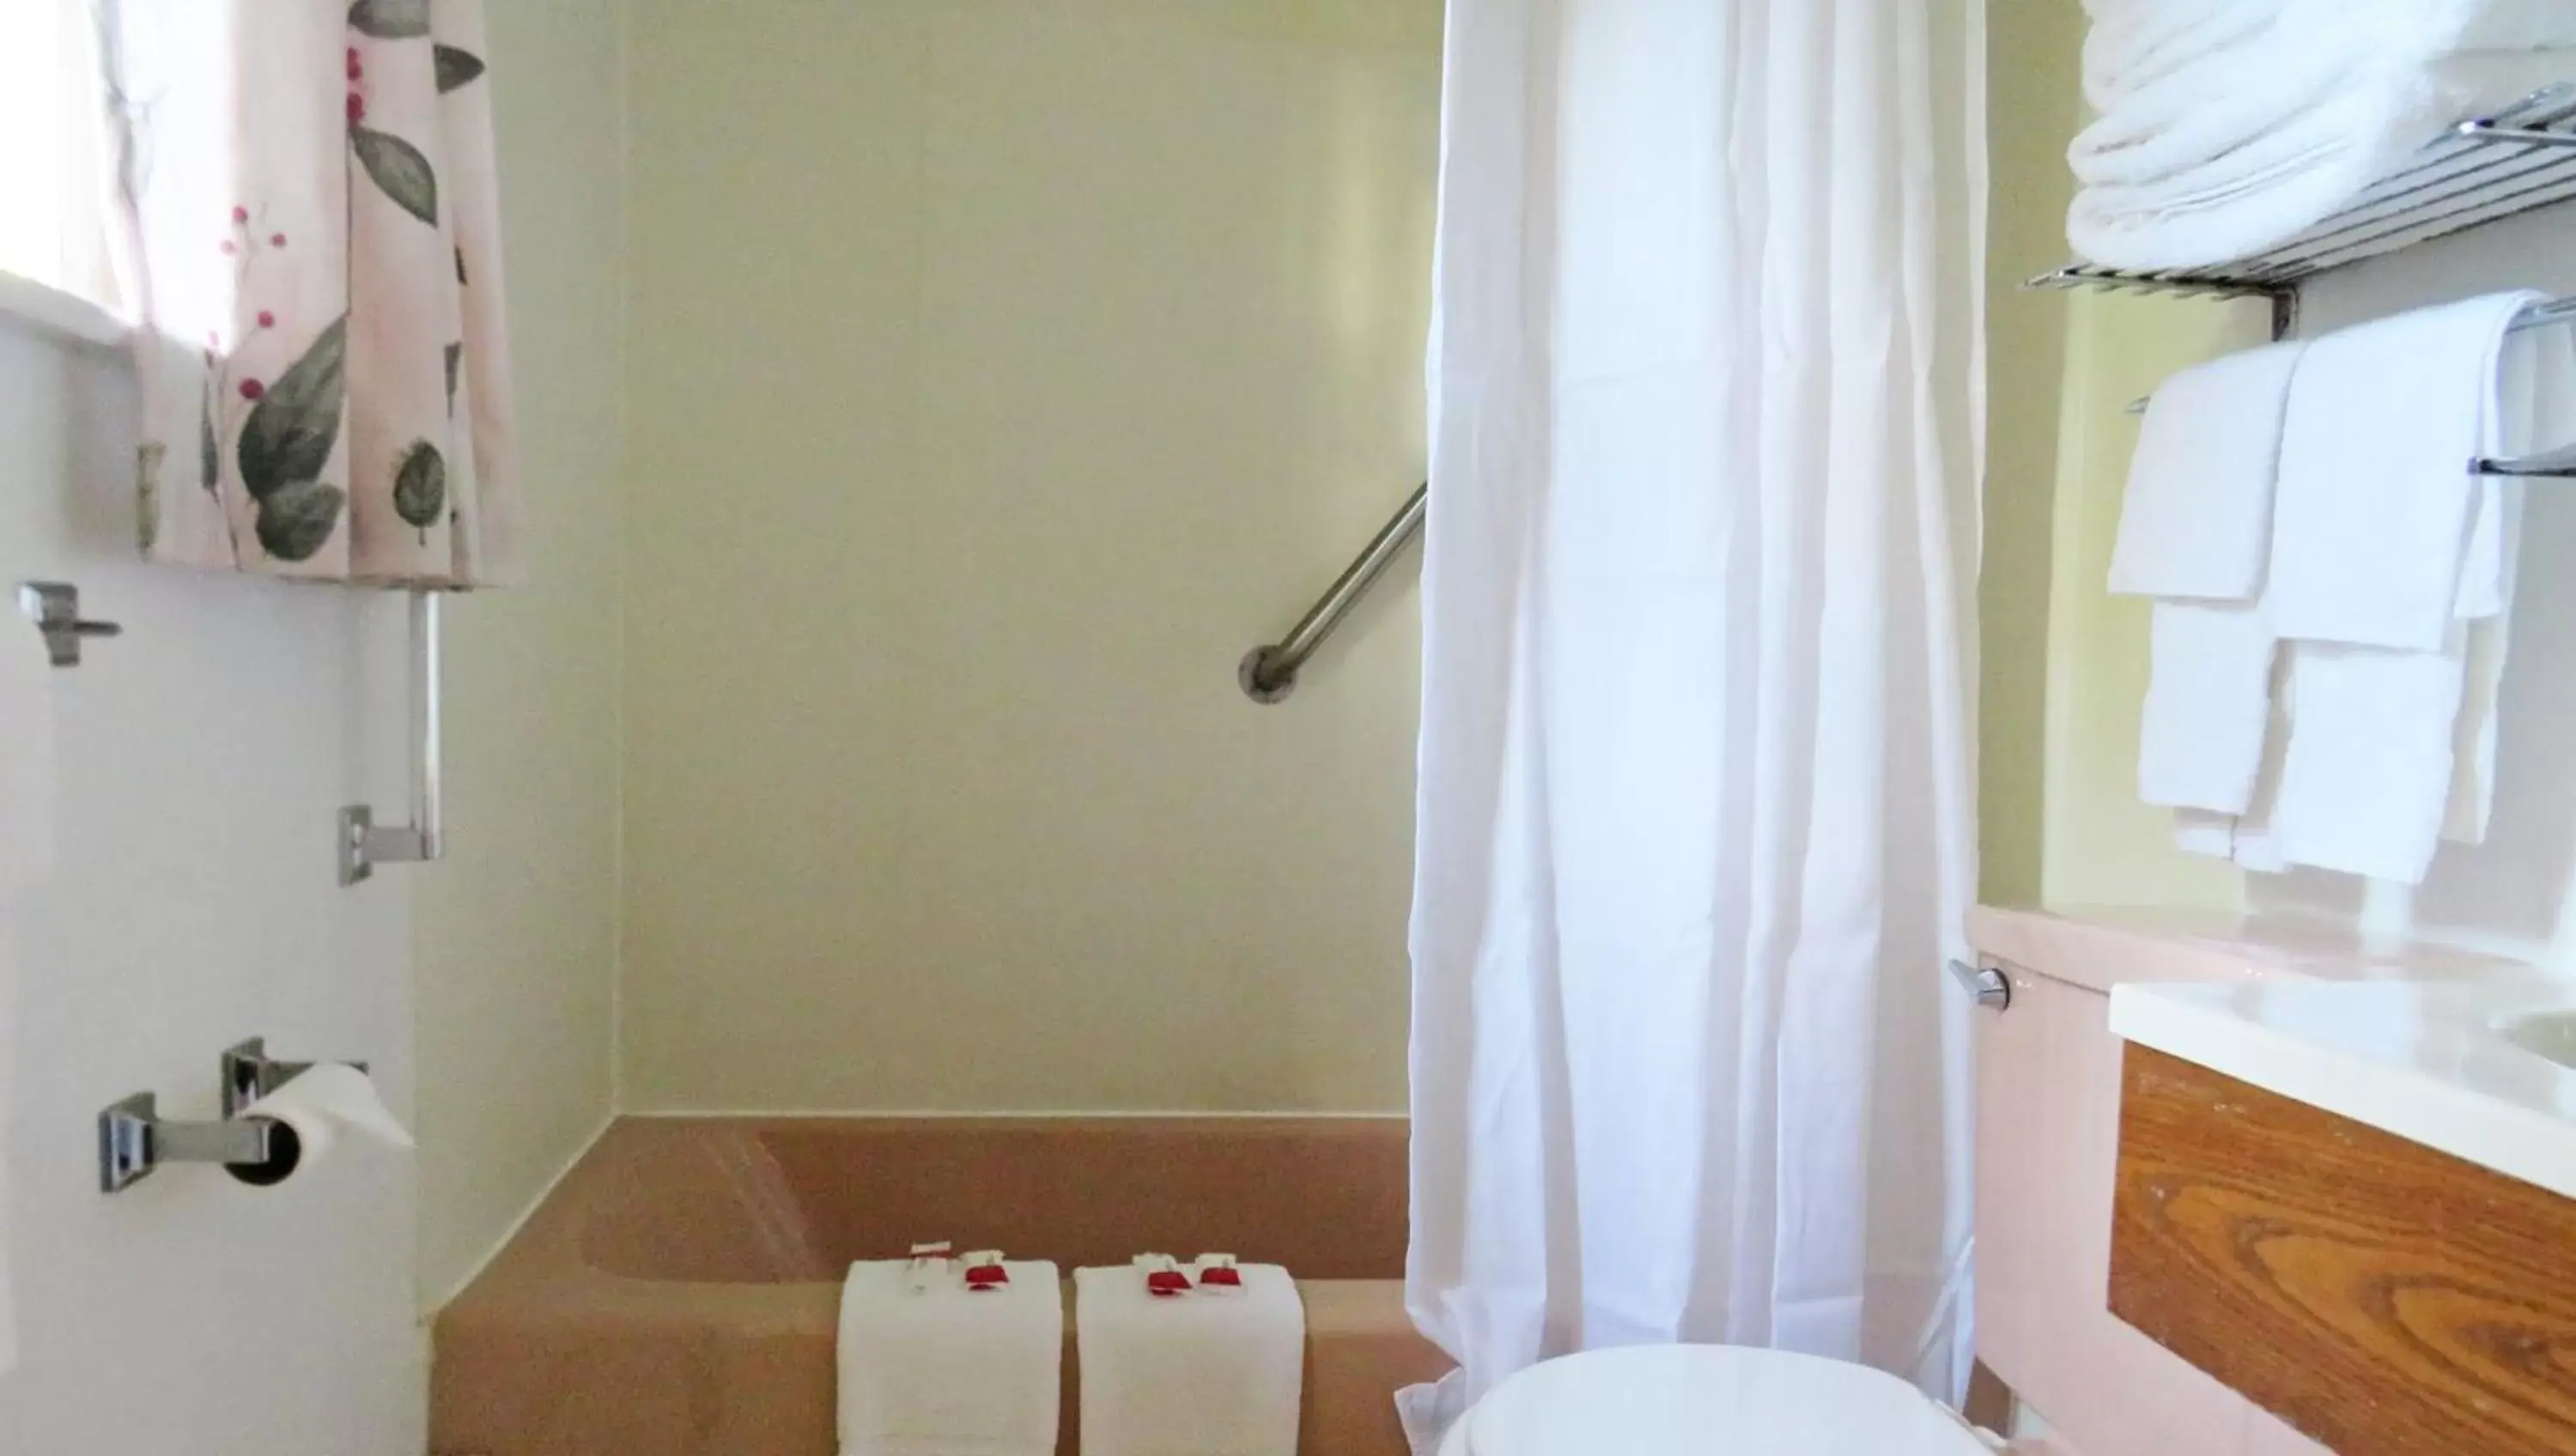 Bathroom in Indianhead Ironwood Hotel